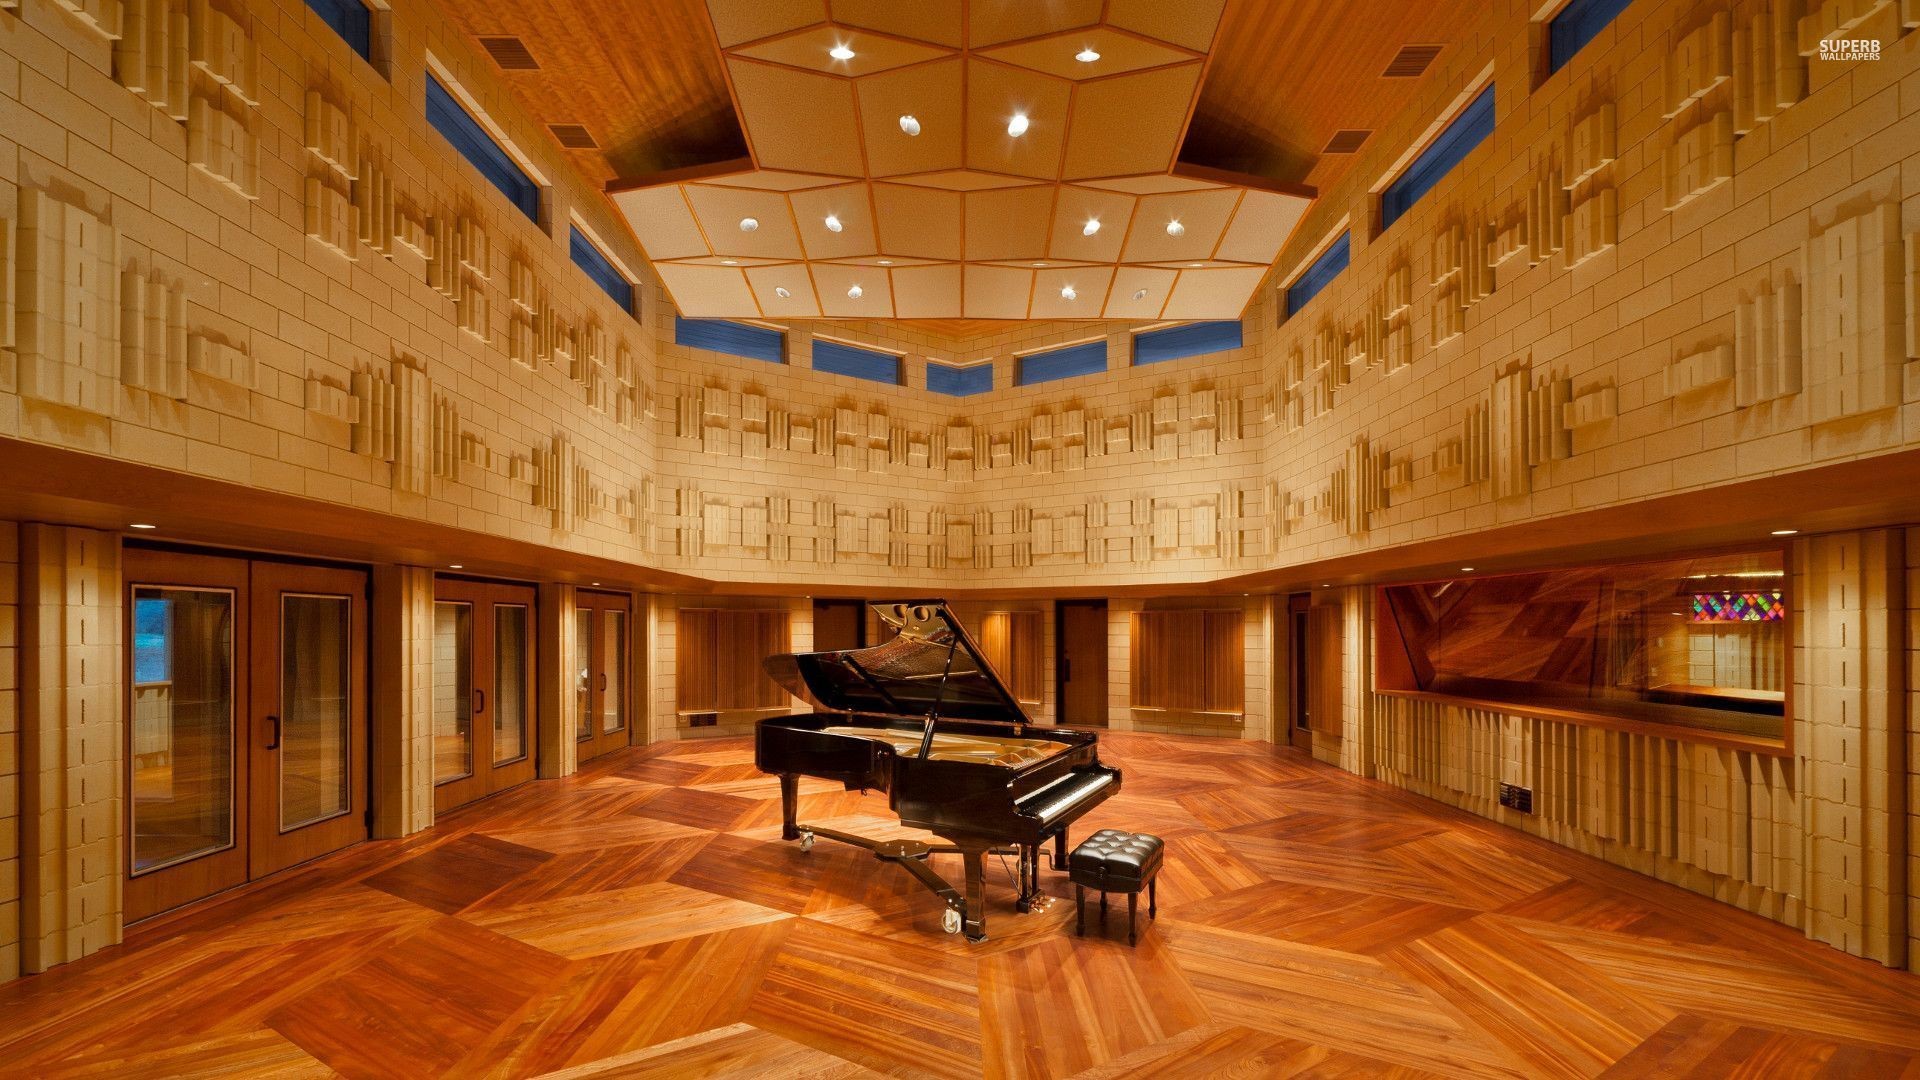 1920x1080 Piano in the Manifold Recording studio wallpaper - Music .